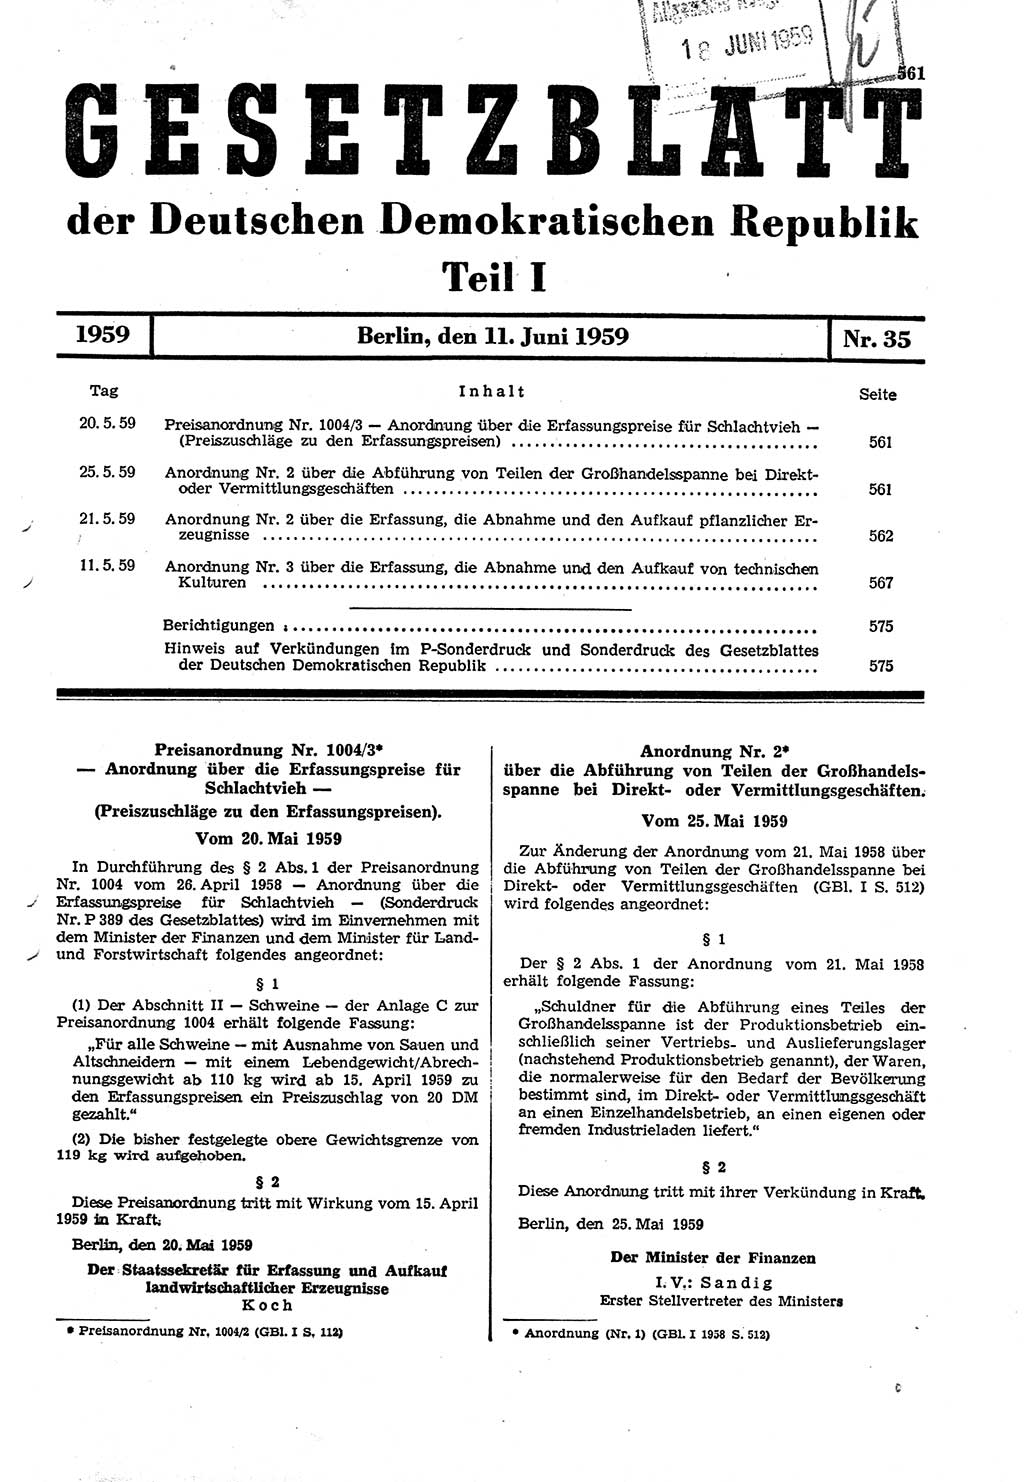 Gesetzblatt (GBl.) der Deutschen Demokratischen Republik (DDR) Teil Ⅰ 1959, Seite 561 (GBl. DDR Ⅰ 1959, S. 561)